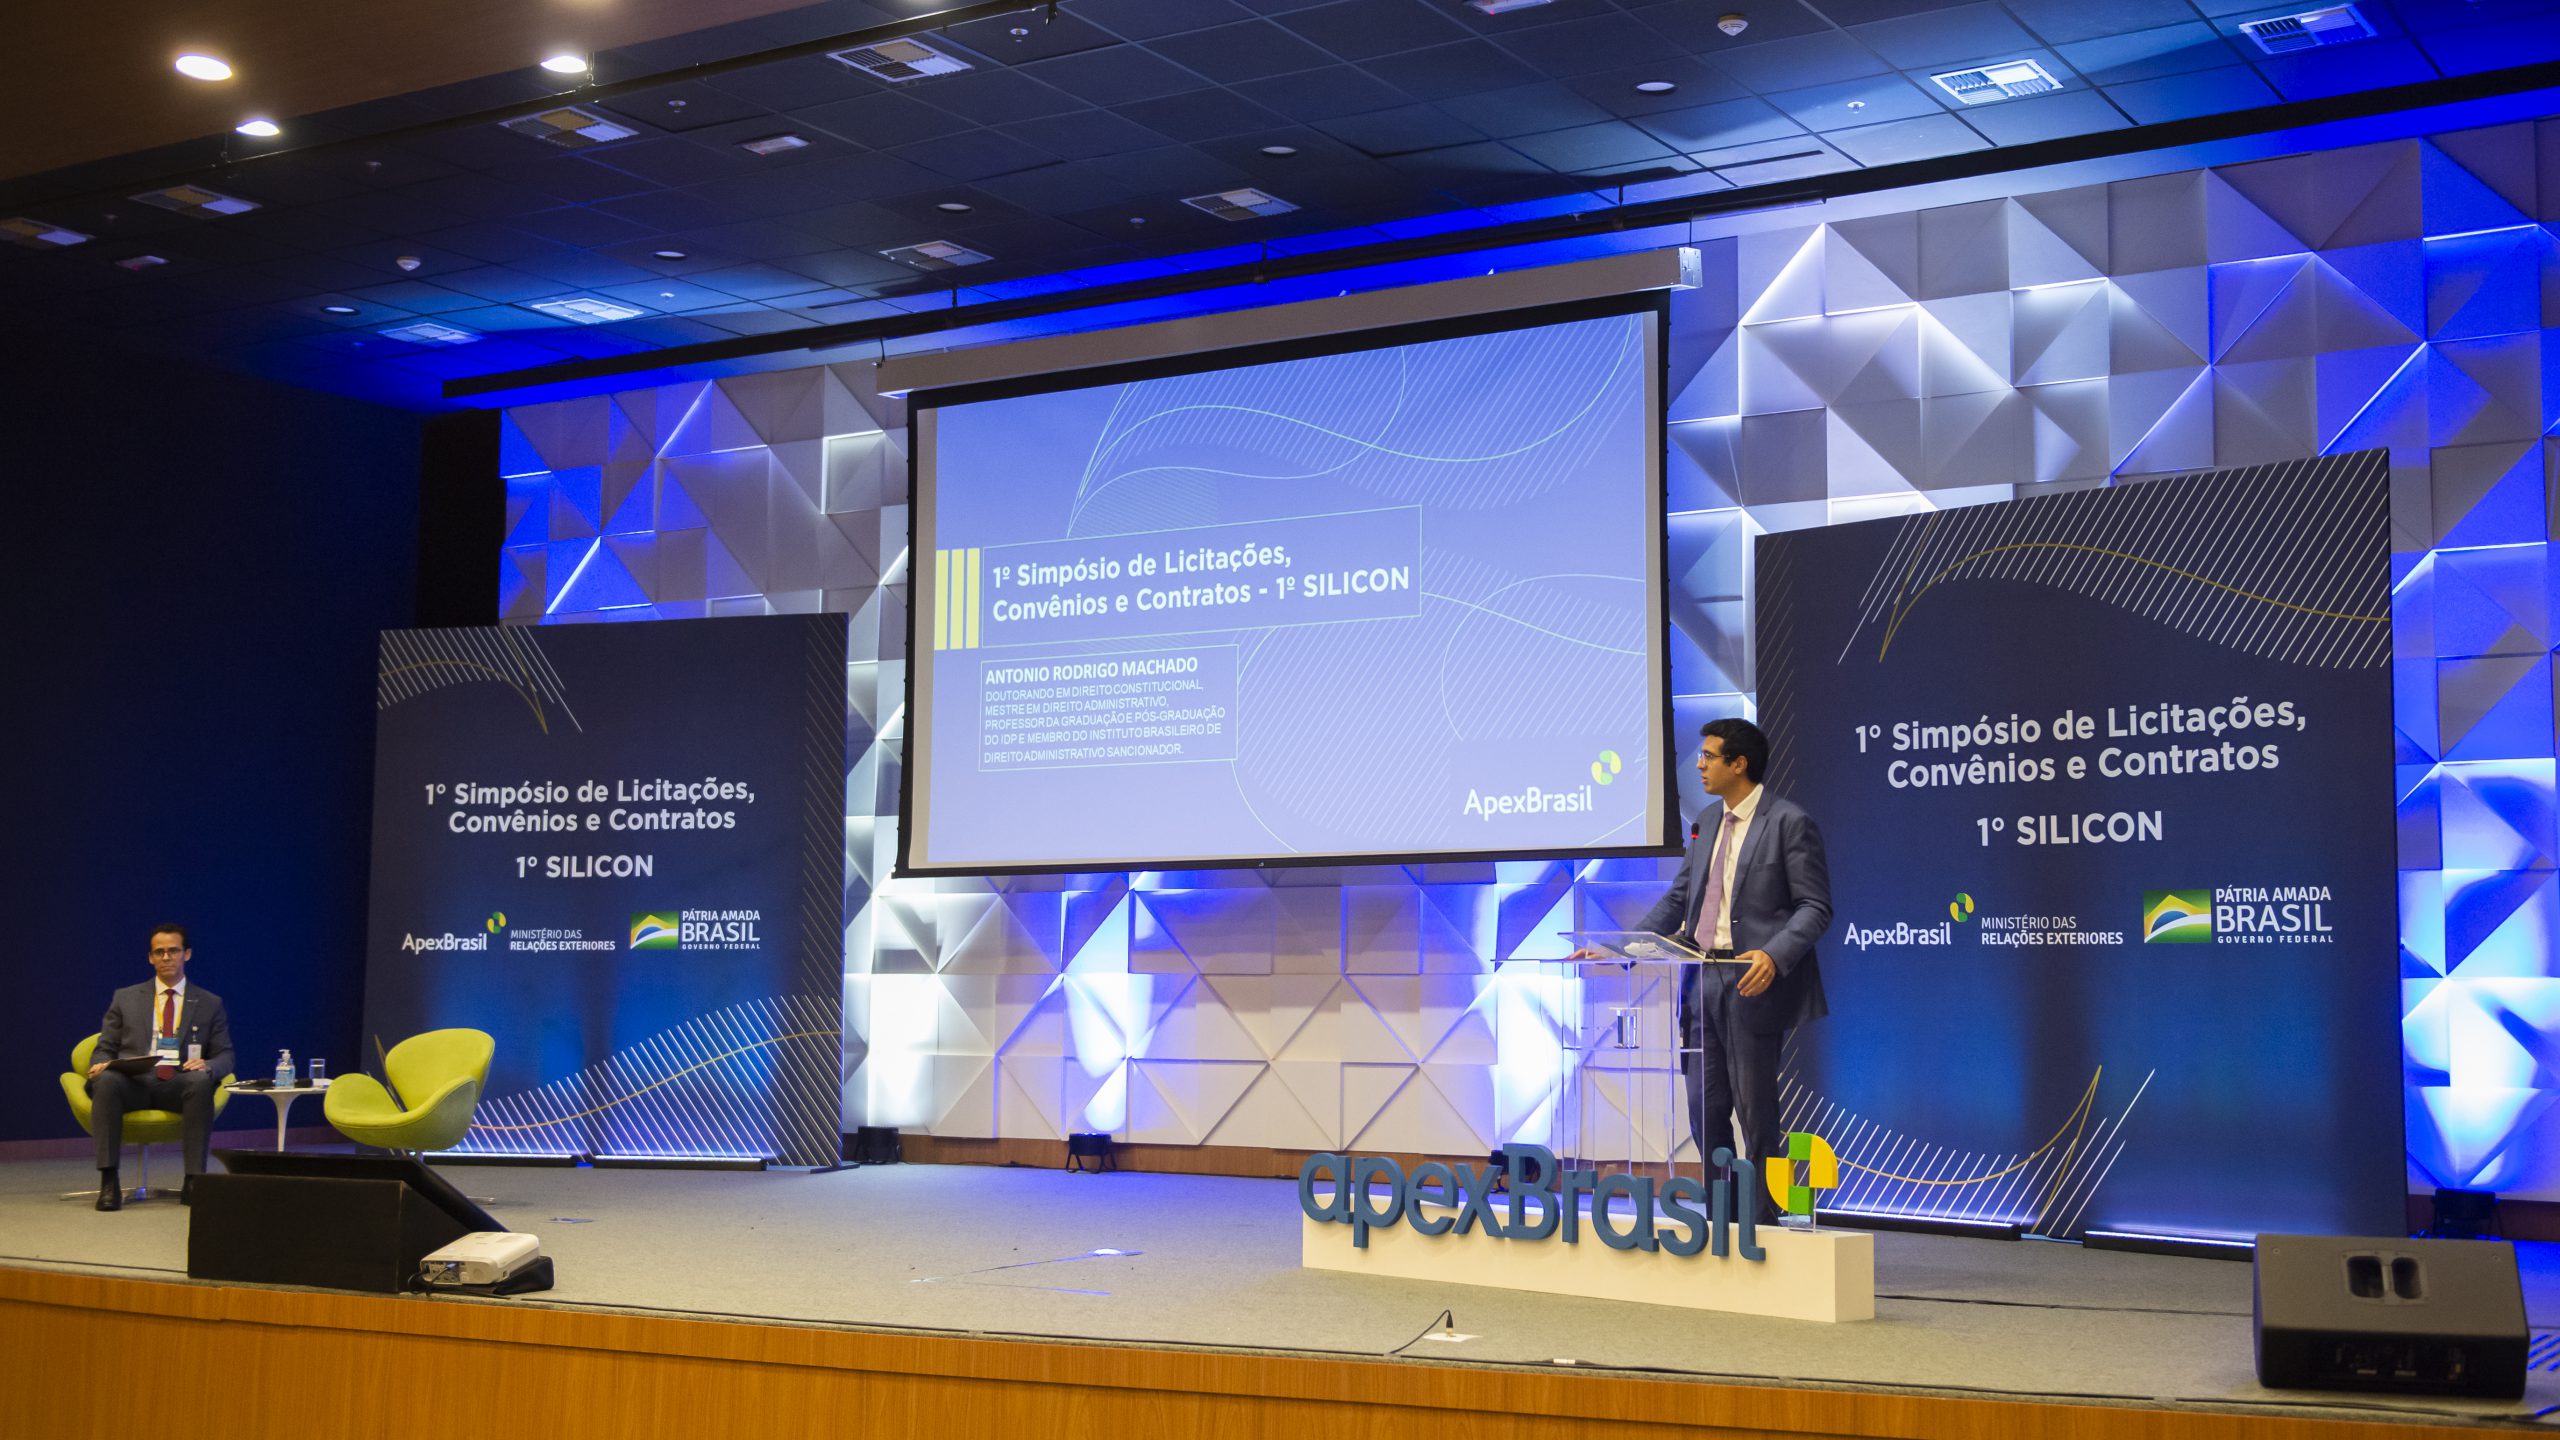 Apex-Brasil promove simpósio Silicon sobre inovação em licitações, convênios e contratos